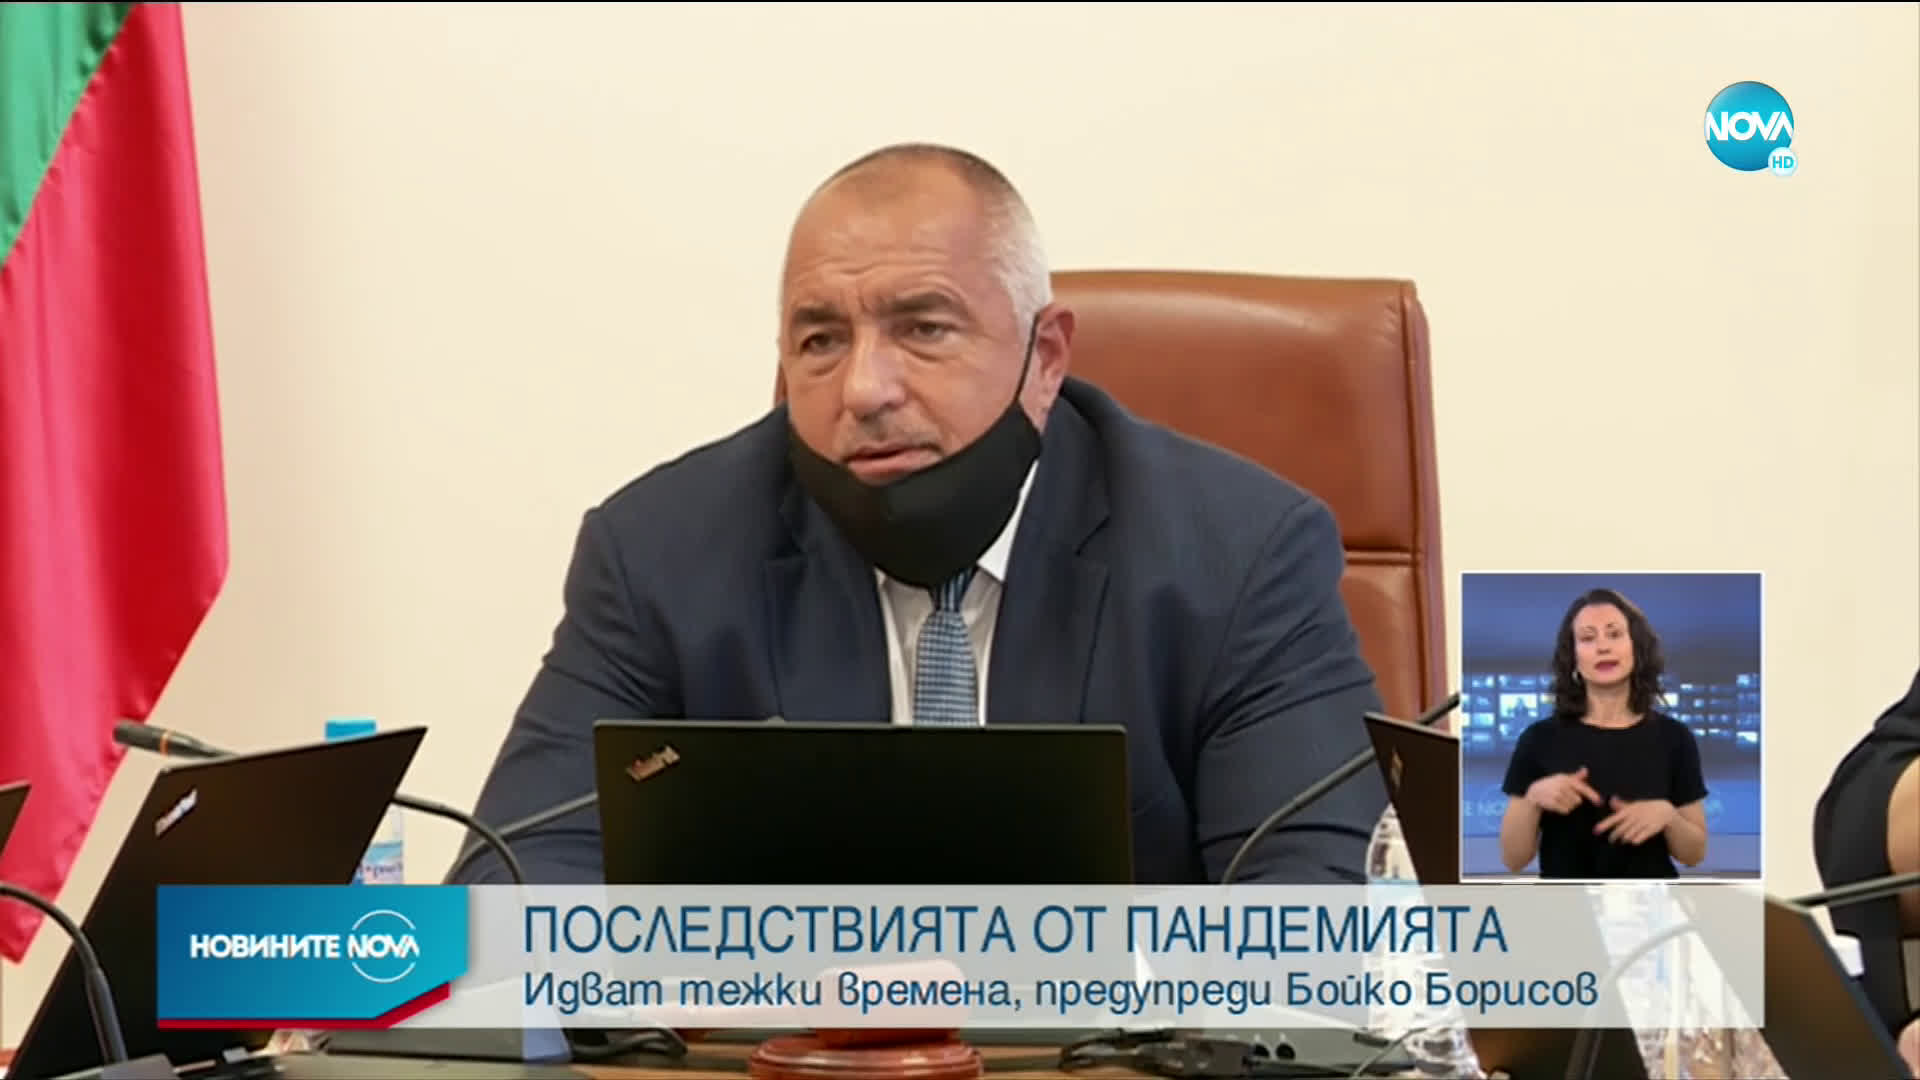 Борисов: Трябва да се пазим, но да не спираме да работим